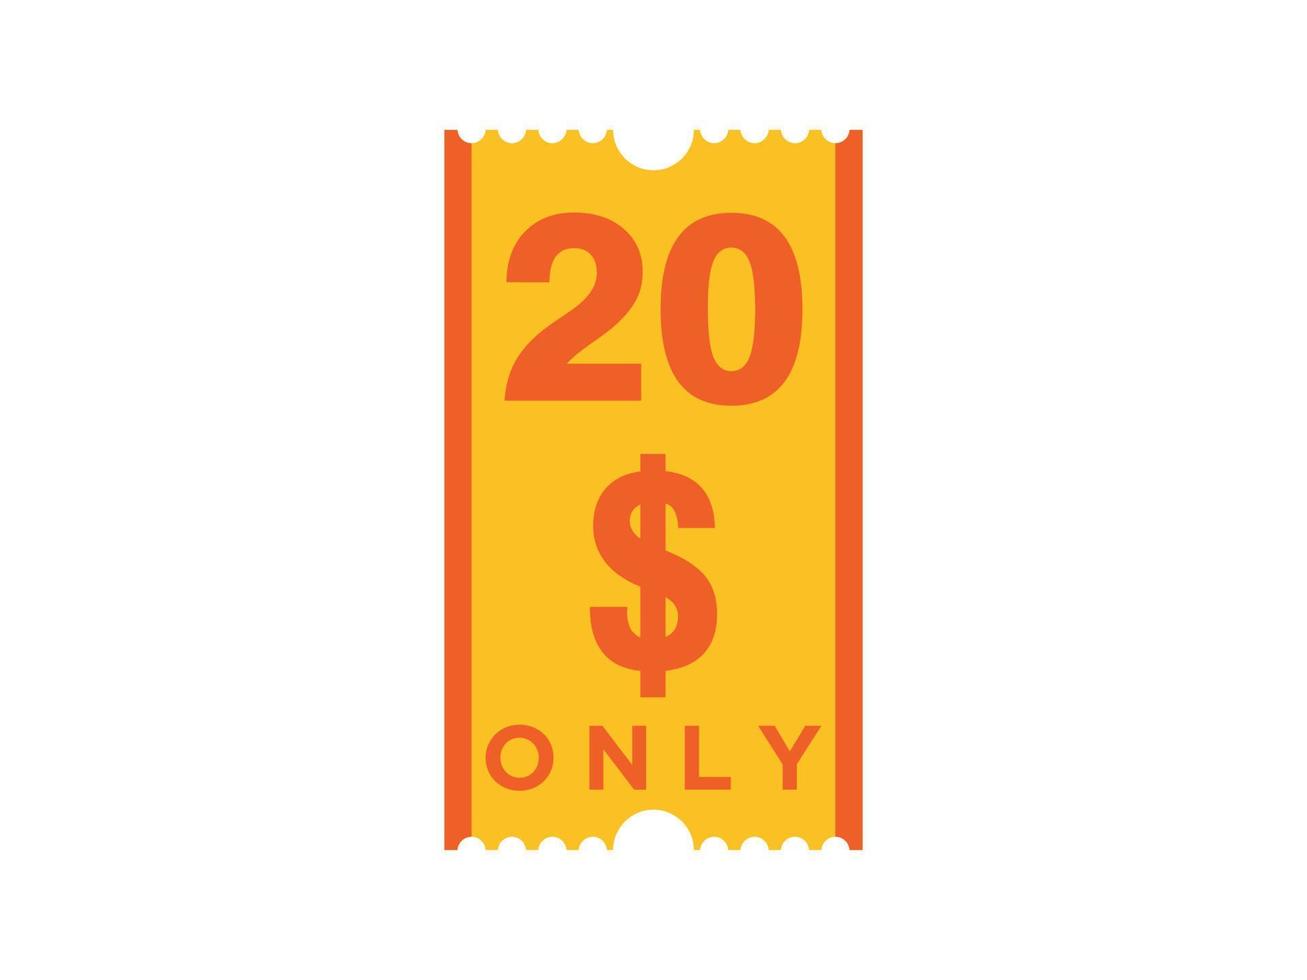 20 dollari solo segno coupon o etichetta o buono sconto etichetta risparmio denaro, con illustrazione vettoriale coupon offerta estiva termina le vacanze del fine settimana